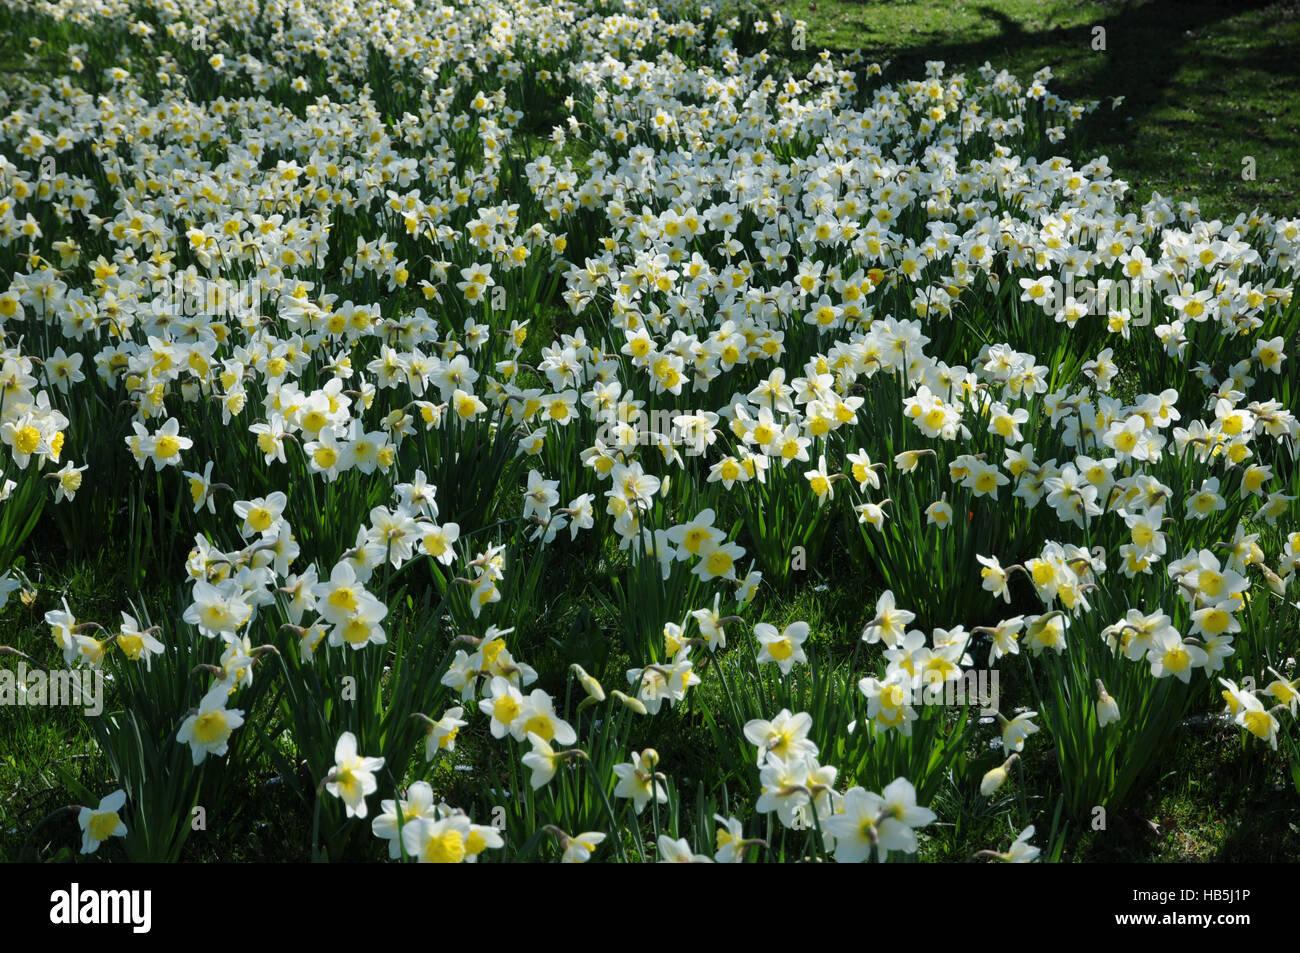 Narcissus x incomparabilis, Nonesuch daffodil Stock Photo